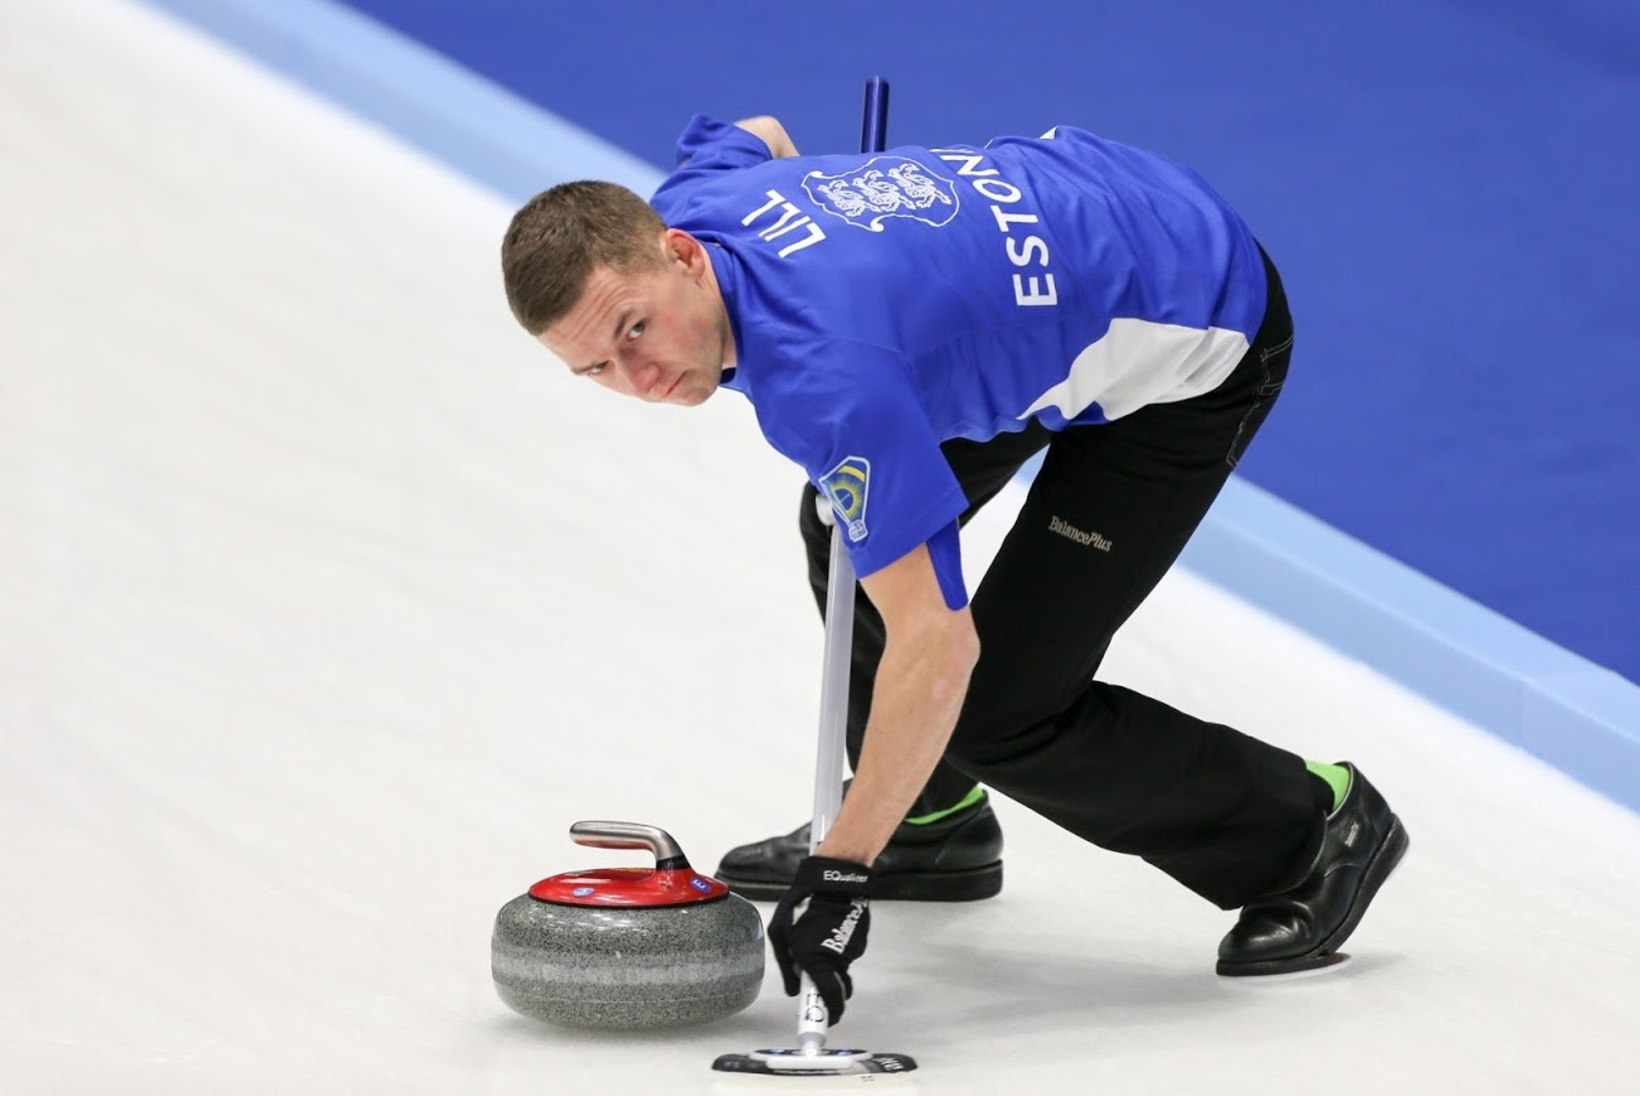 Curlingumeeskond sai koduse EMi eel maailmameistrist treeneri: juba esimesed mängud olid väga rikastavad